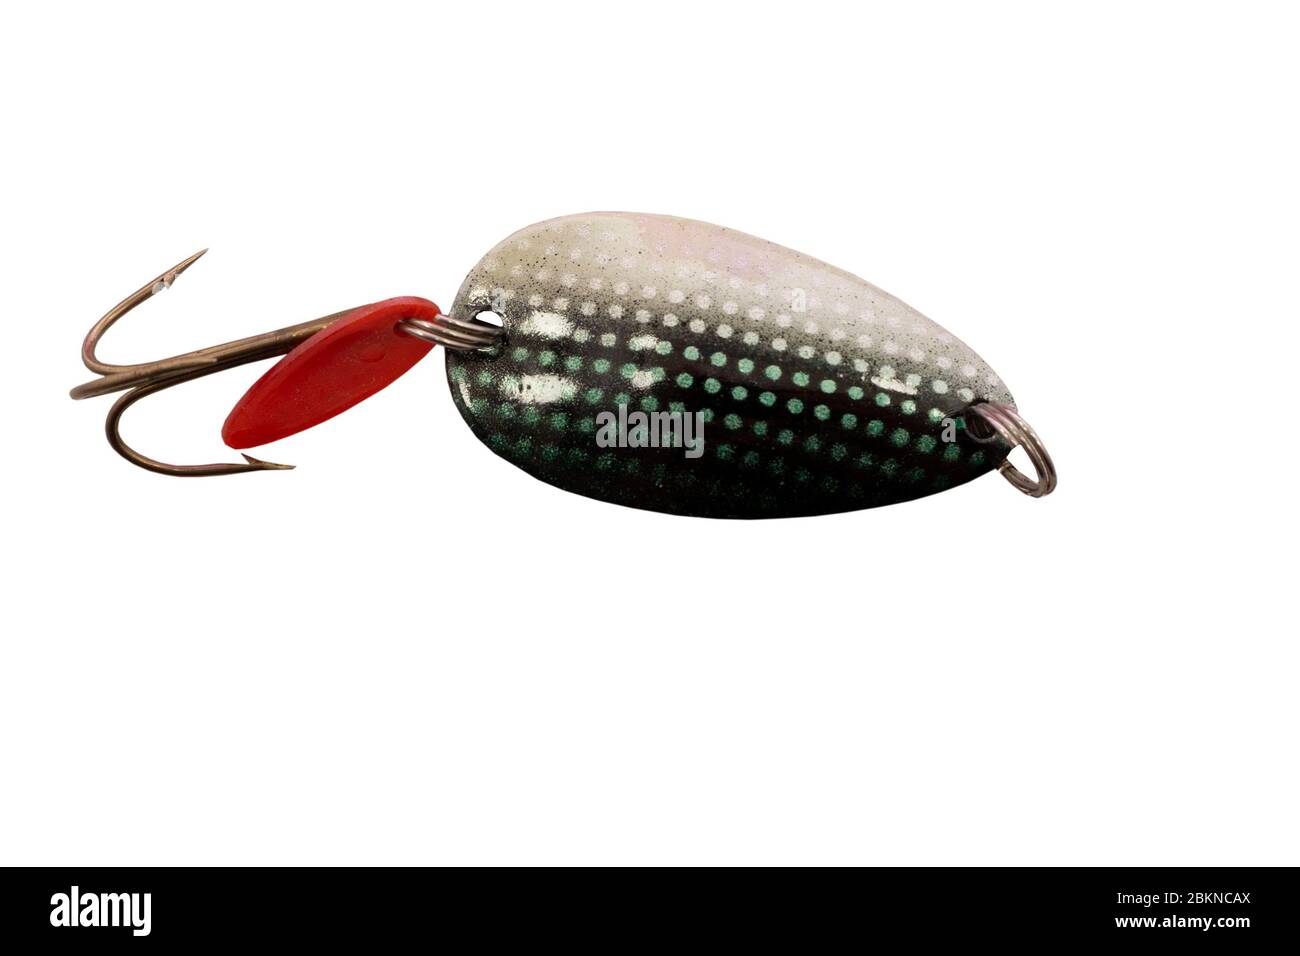 Aparejo de pesca - pesca spinning, lures y bambolers Fotografía de stock -  Alamy